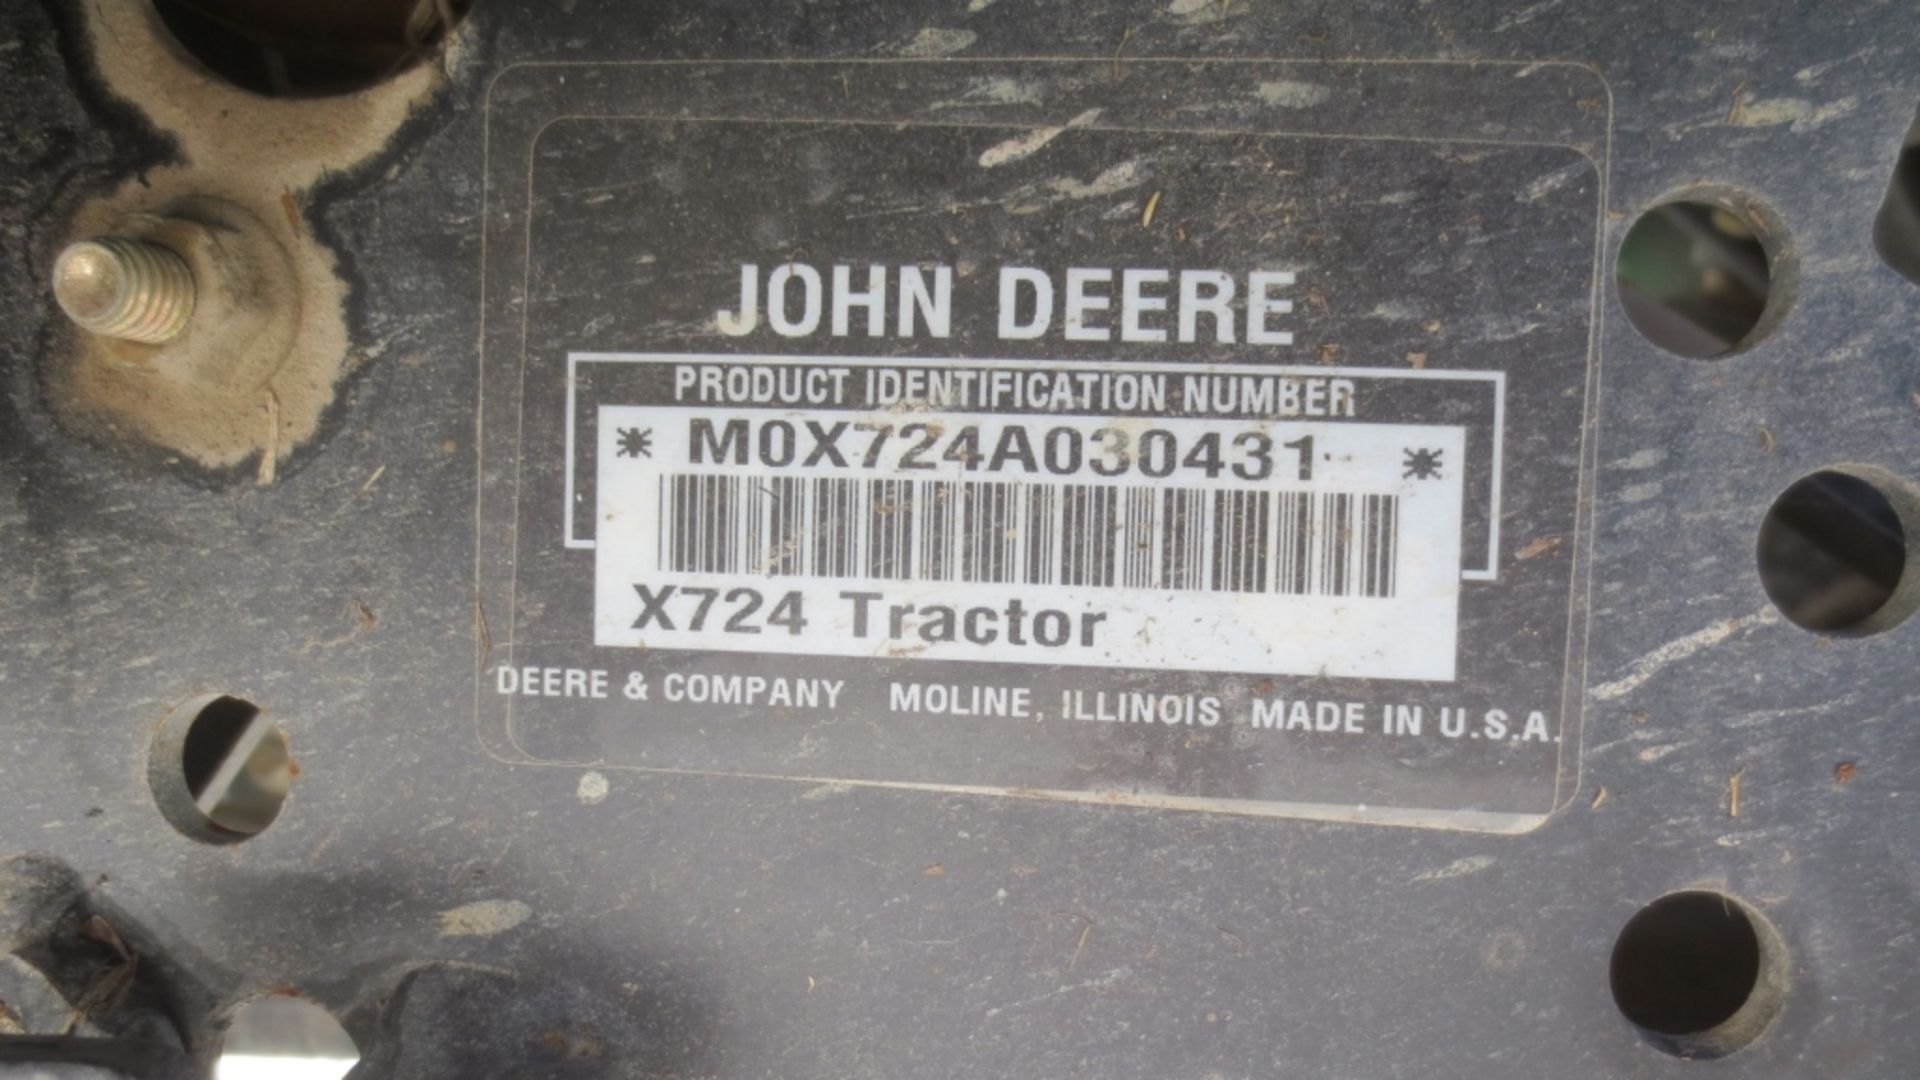 2008 John Deere X724 Ultimate mower w/60" deck Liquid cooled gas engine, 4 wheel steer, power - Image 4 of 4